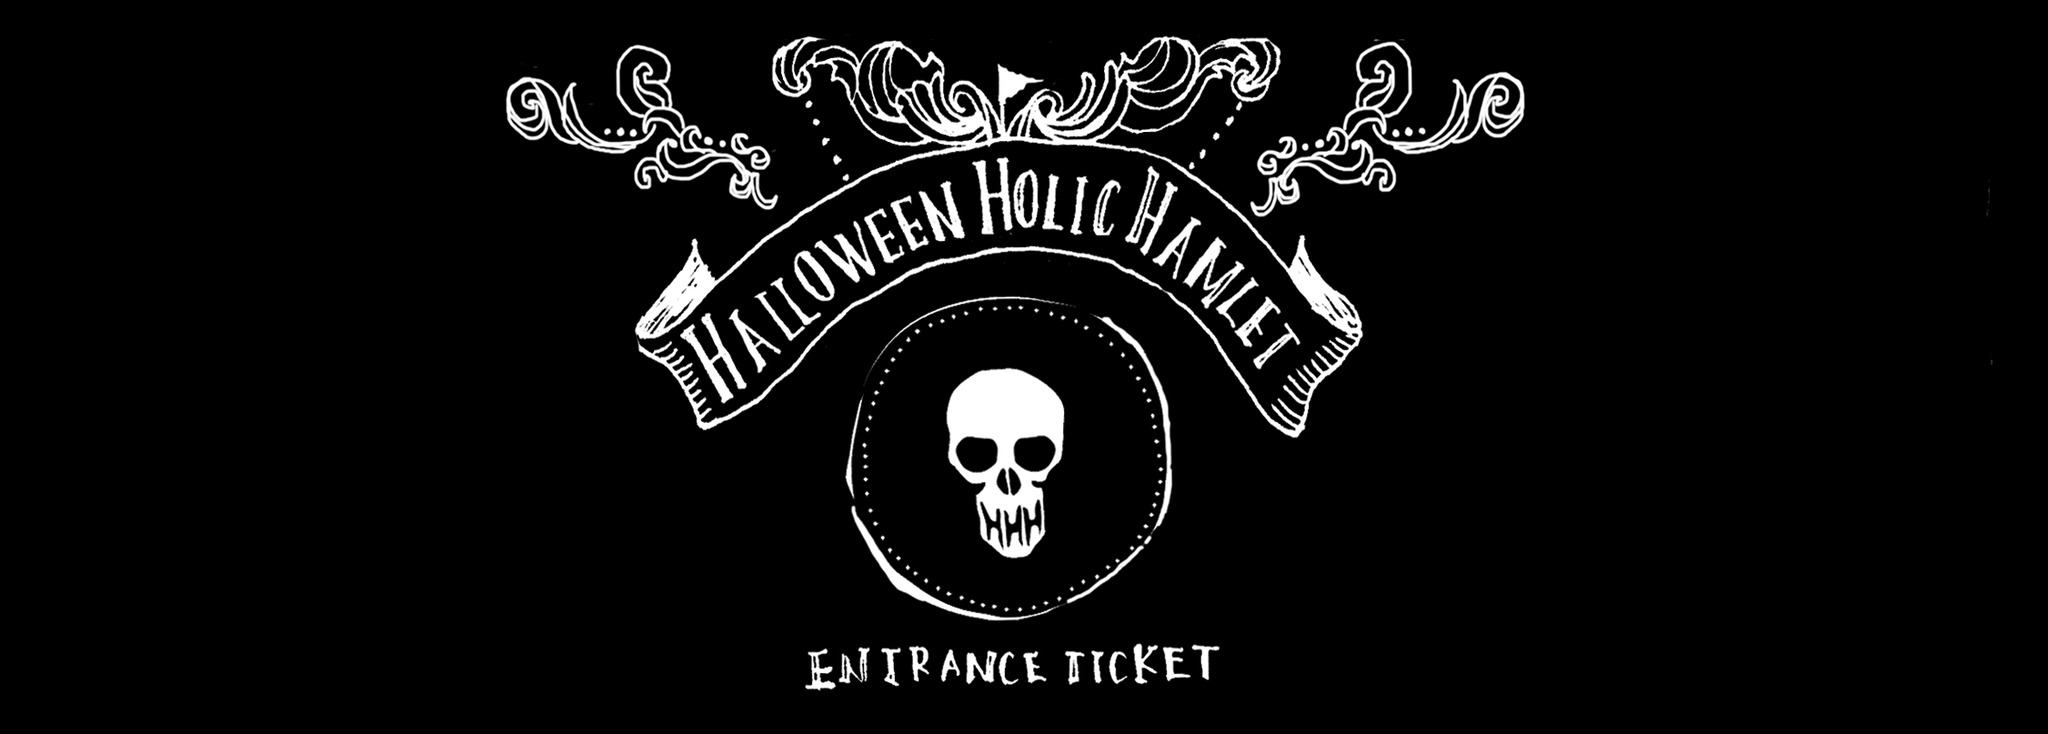 Halloween Holic Hamlet